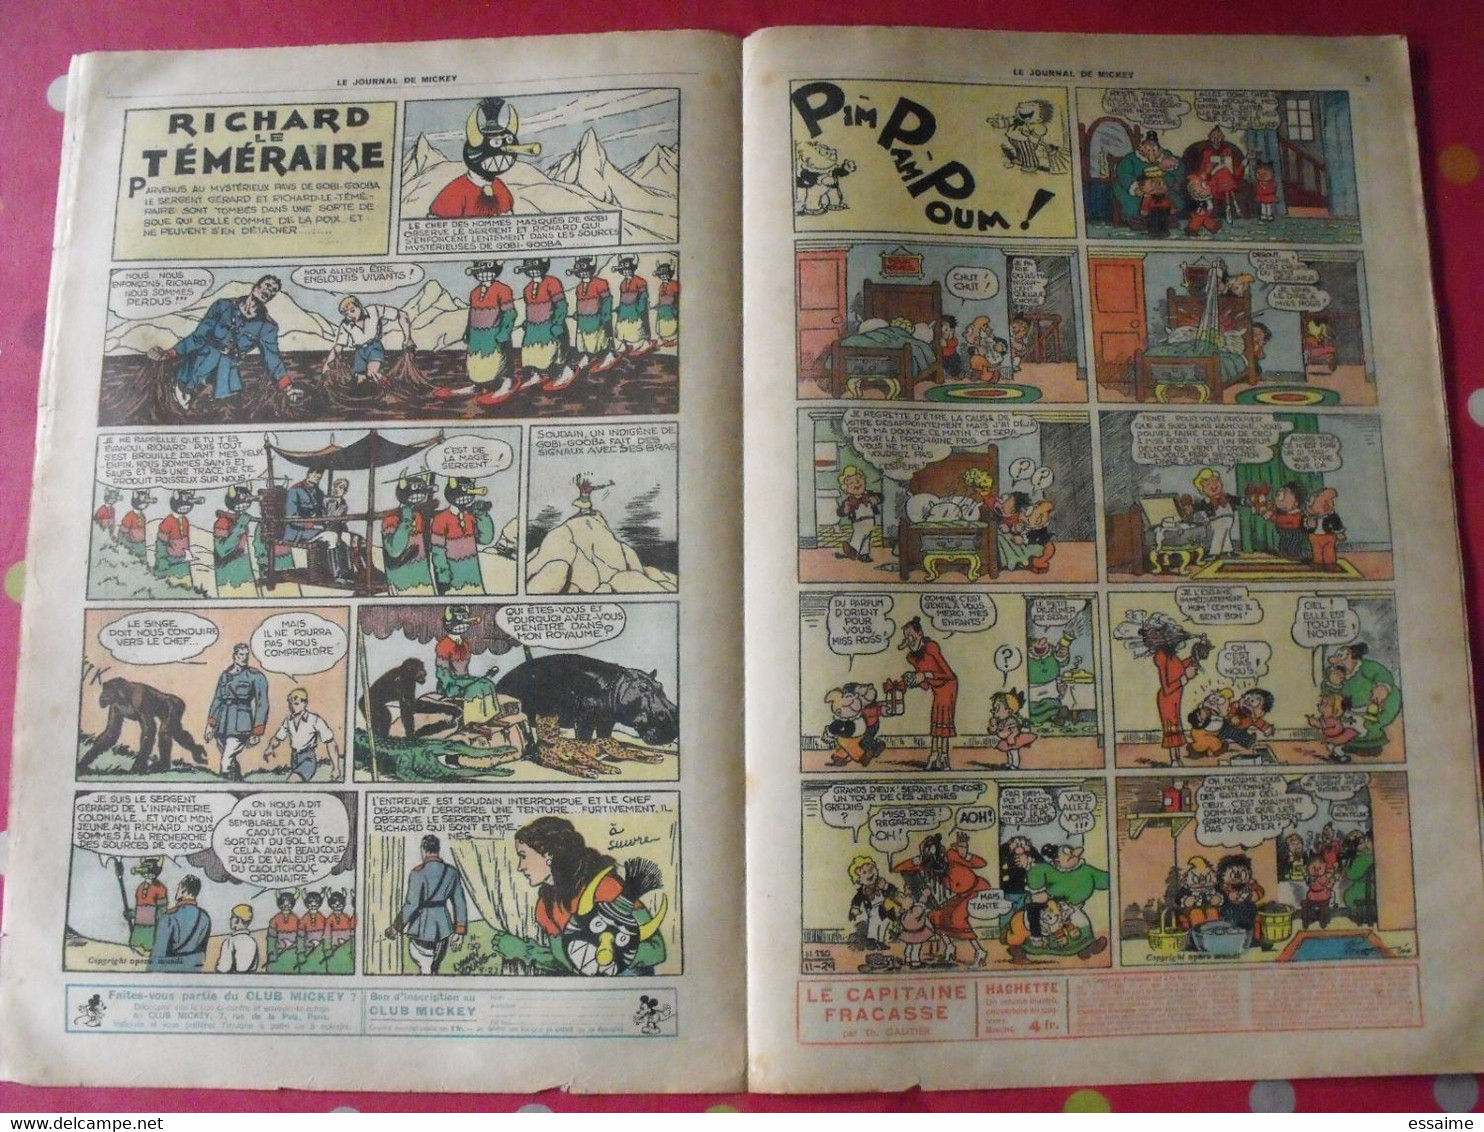 5 n° du journal de Mickey 1937. jojo richard pim pam poum jim la jungle malheurs d'annie donald